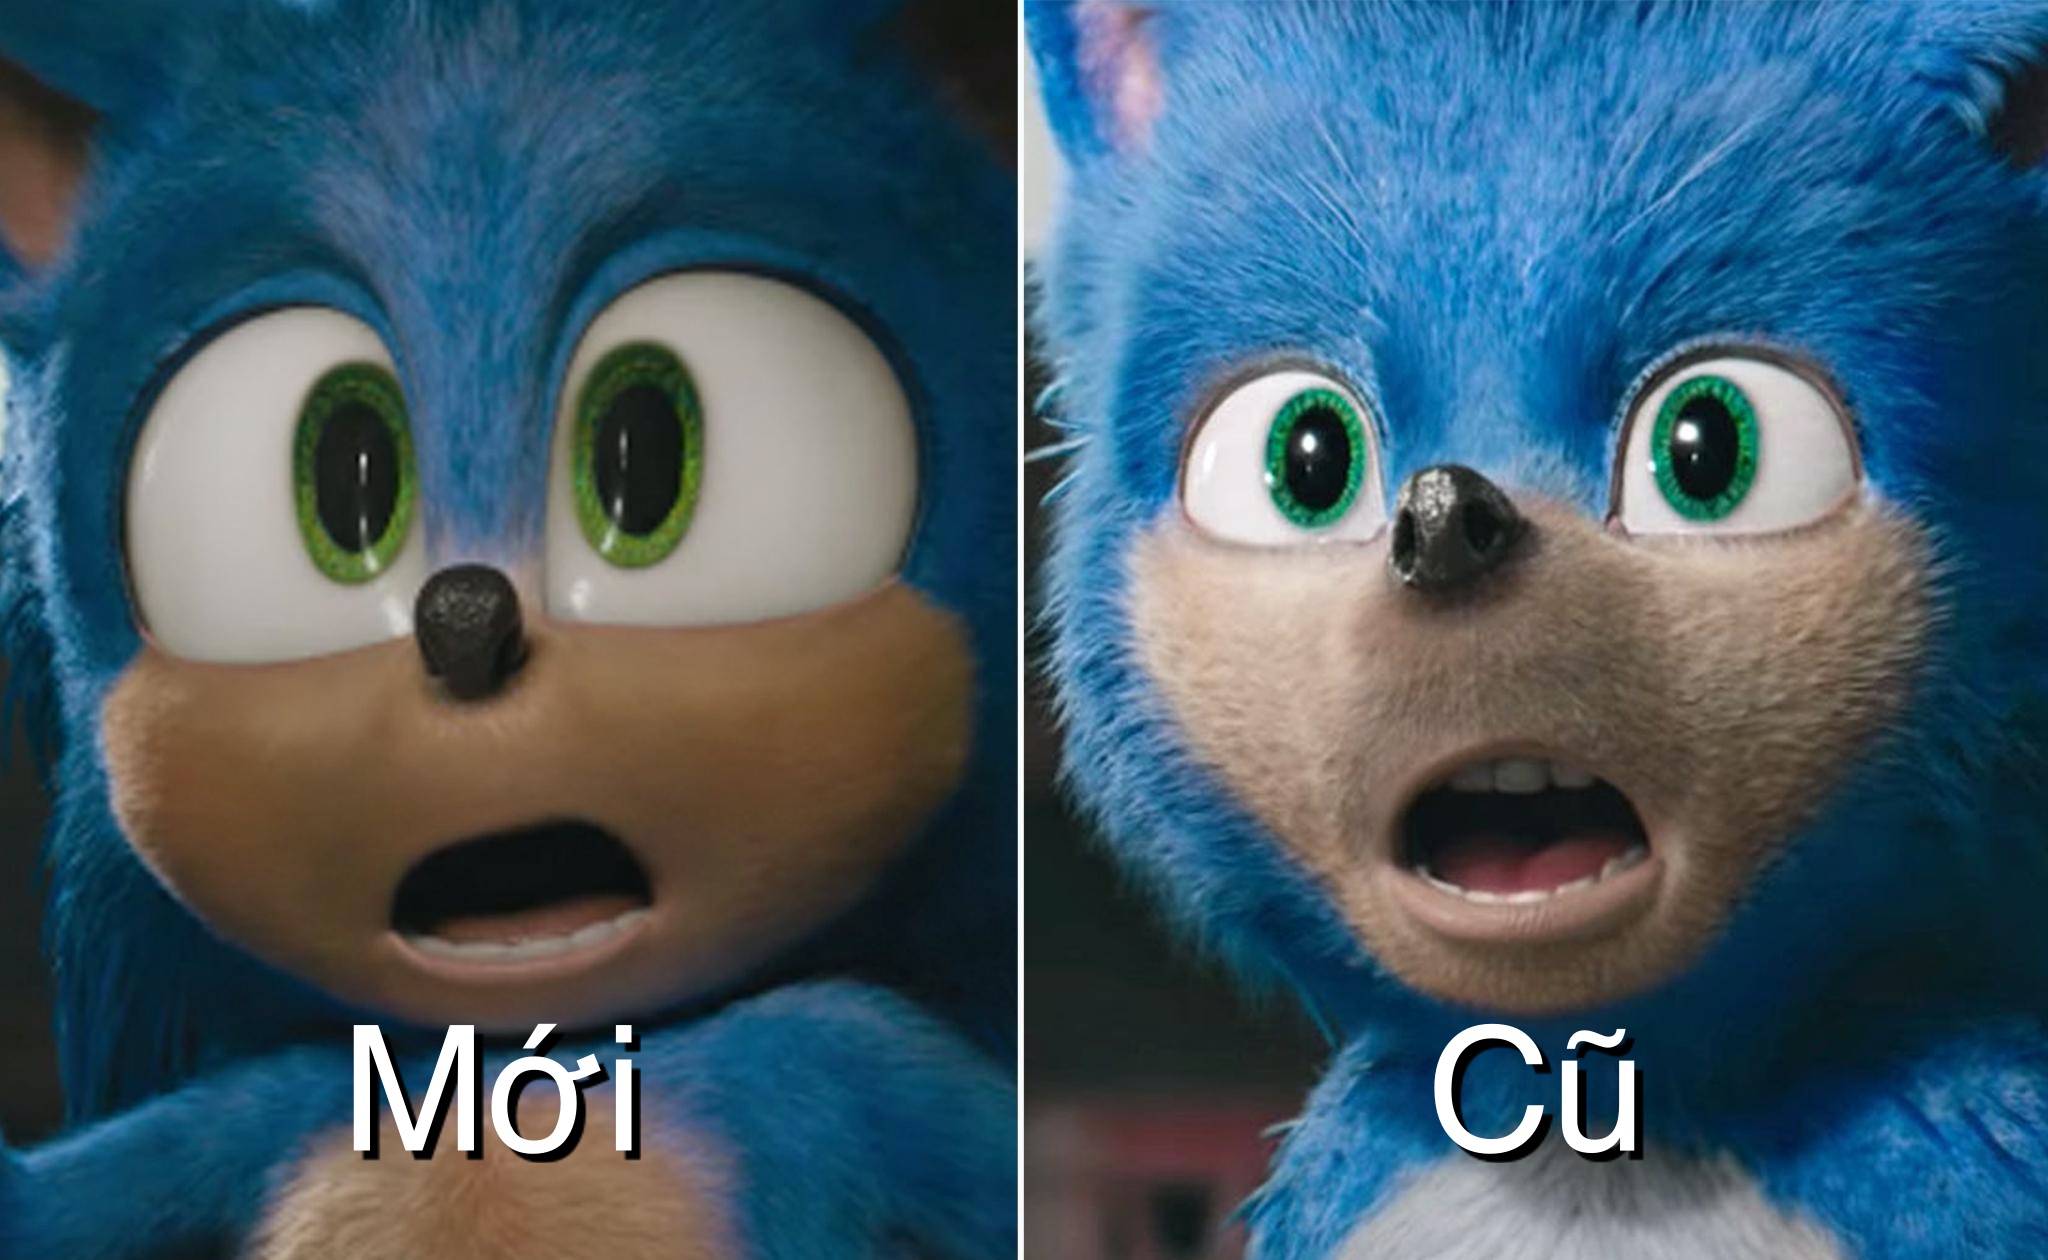 Trailer phim Sonic the Hedgehog được làm lại: Dễ thương hơn, ít răng, mắt to